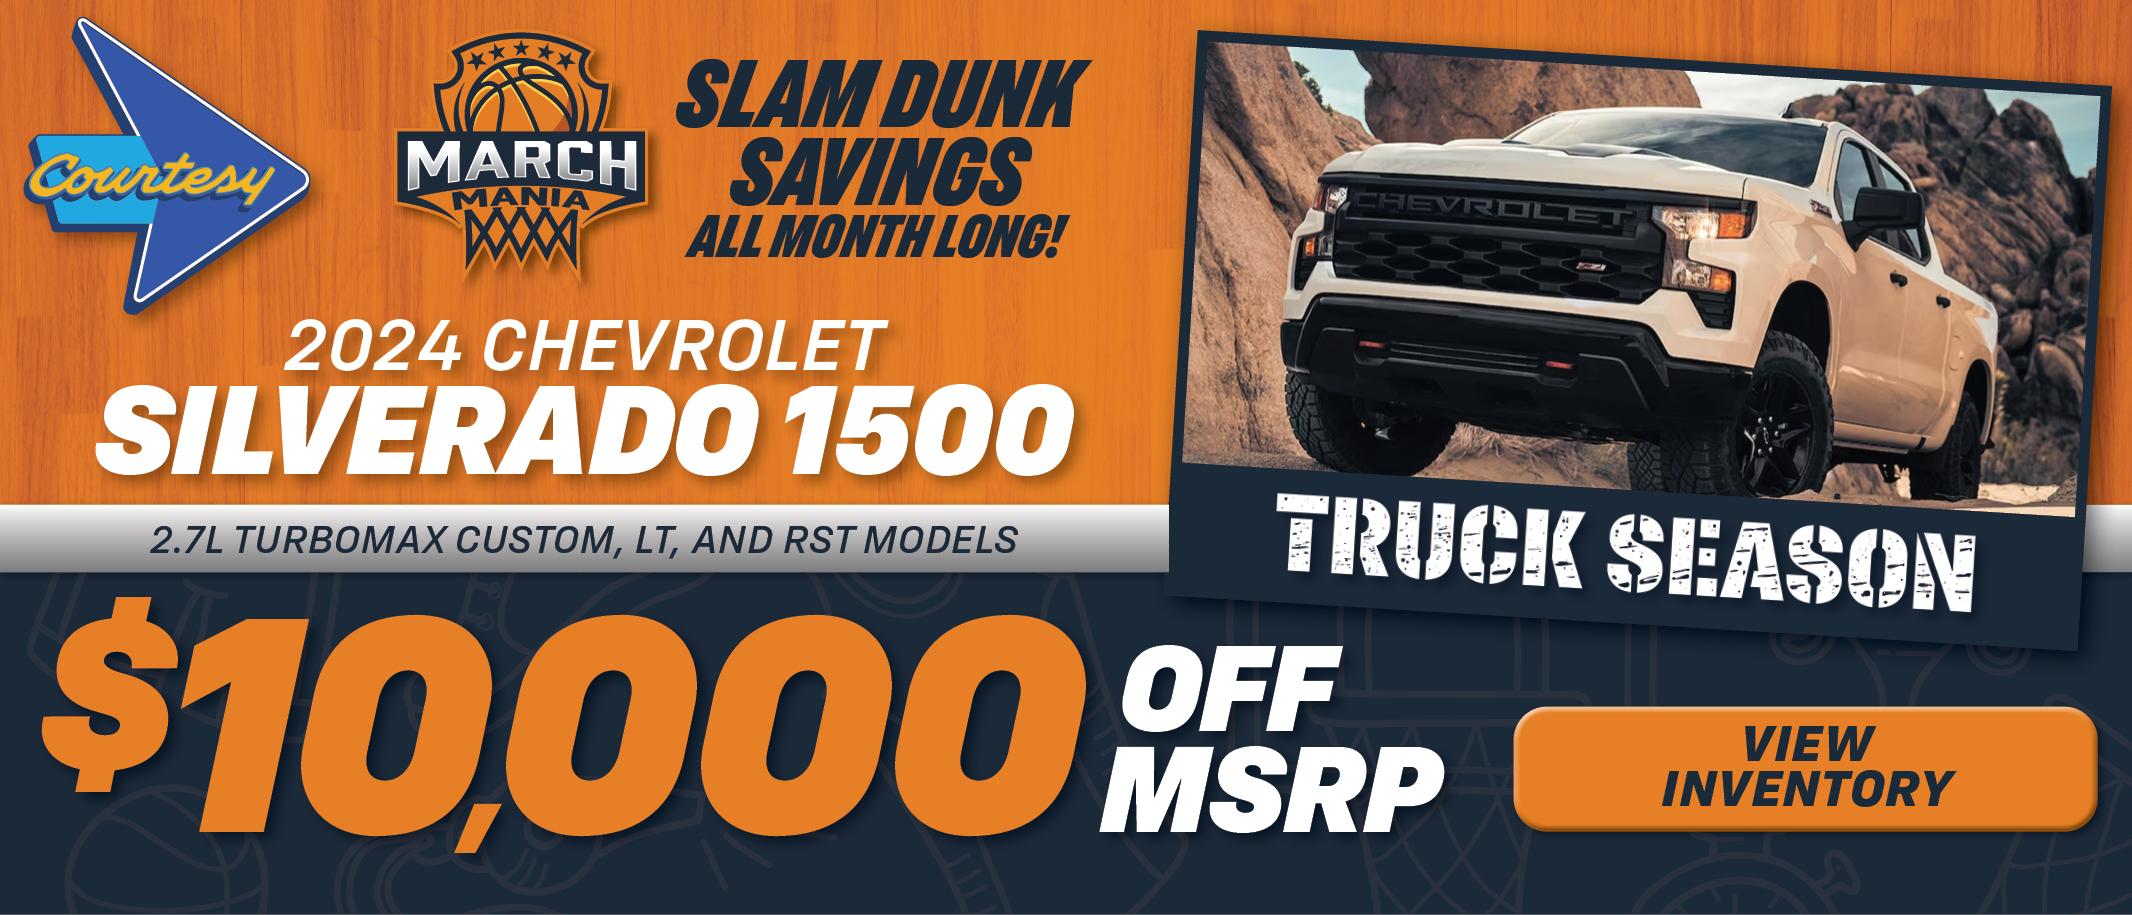 Silverado 1500 Trucks Specials